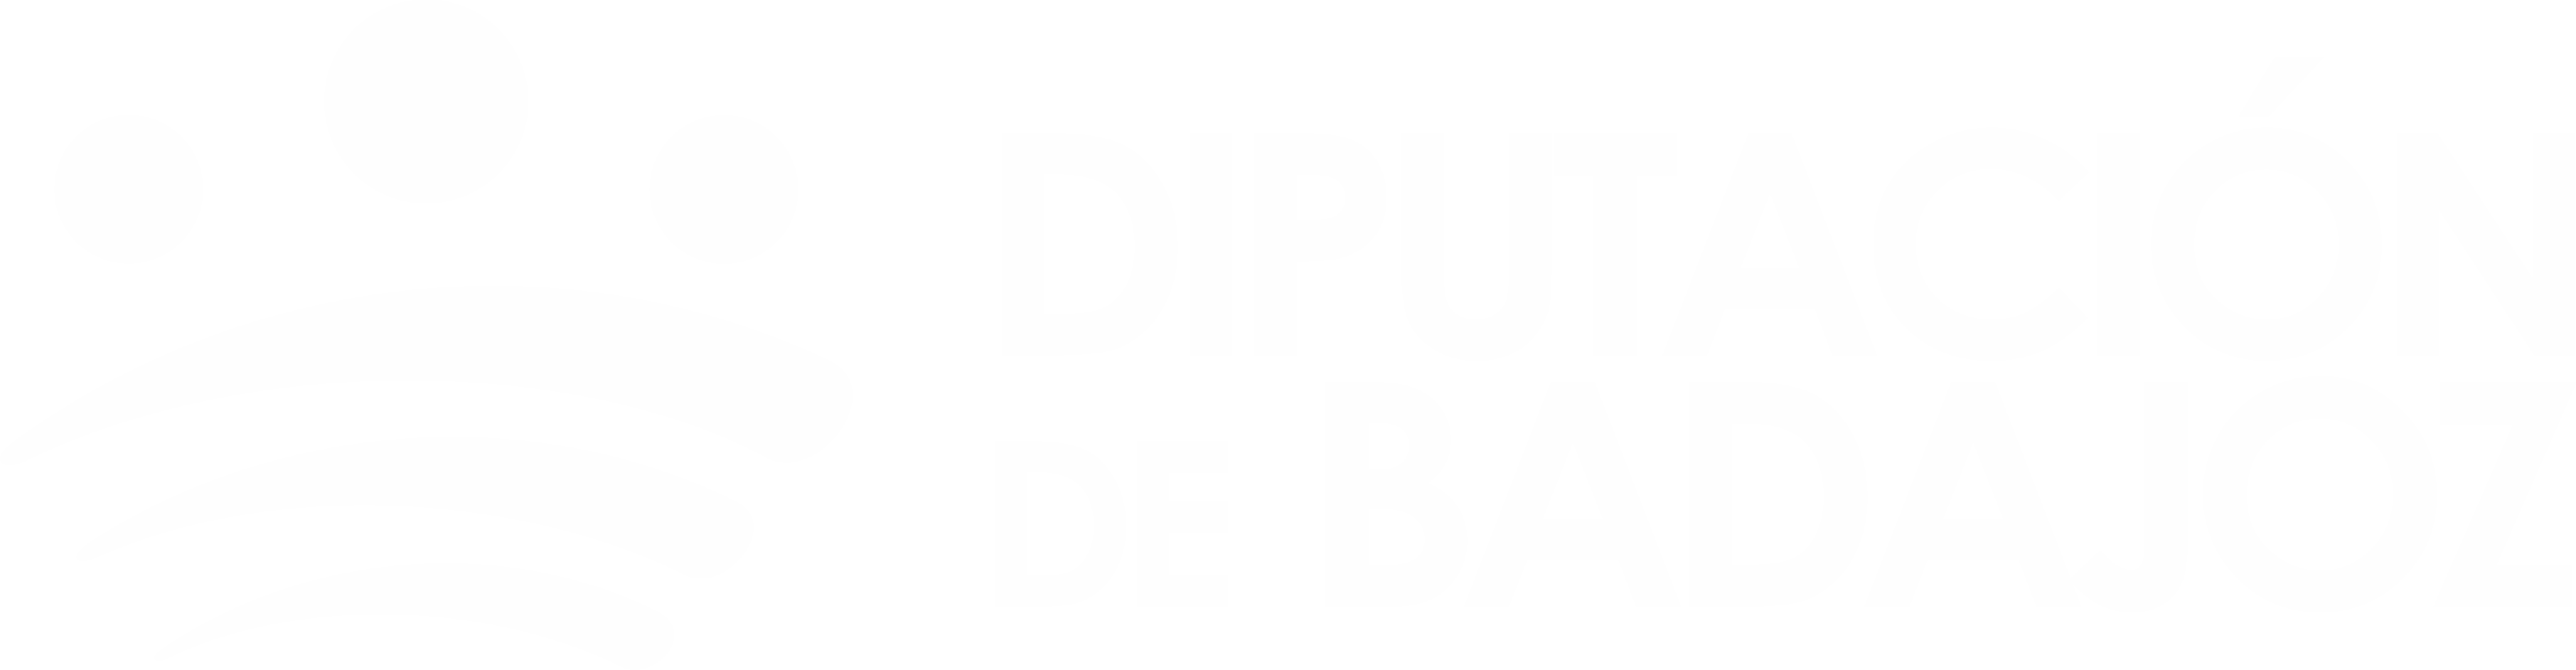 Portal de Participación Ciudadana de la Diputación de Badajoz